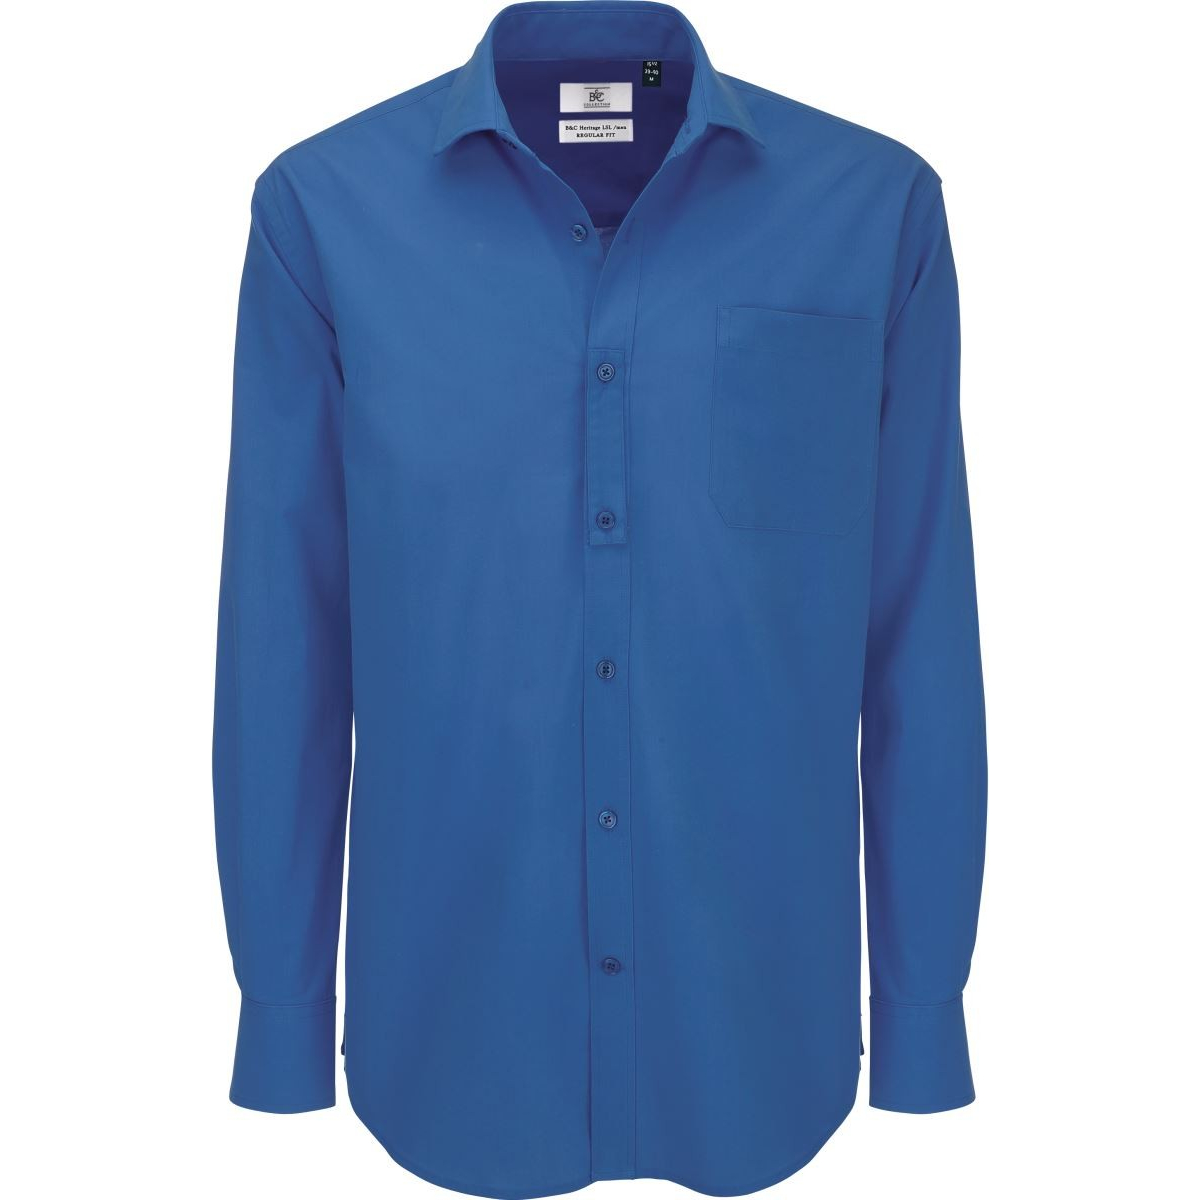 Pánská popelínová košile B&C Heritage s dlouhým rukávem - modrá, S